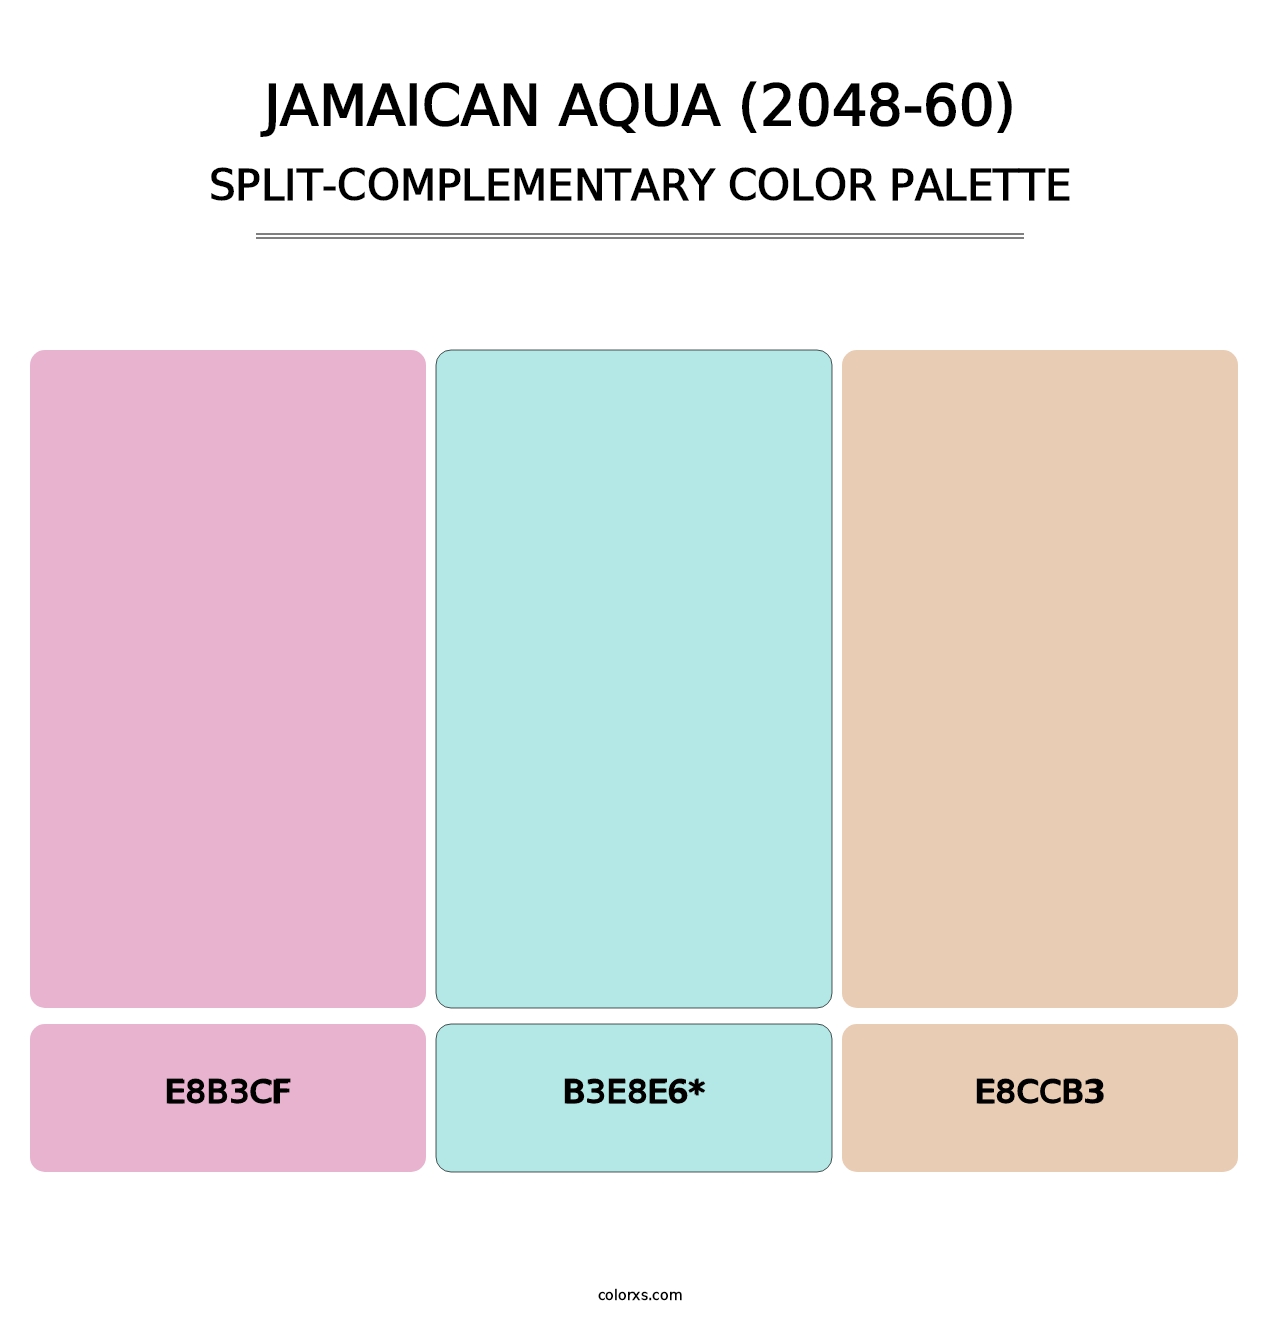 Jamaican Aqua (2048-60) - Split-Complementary Color Palette